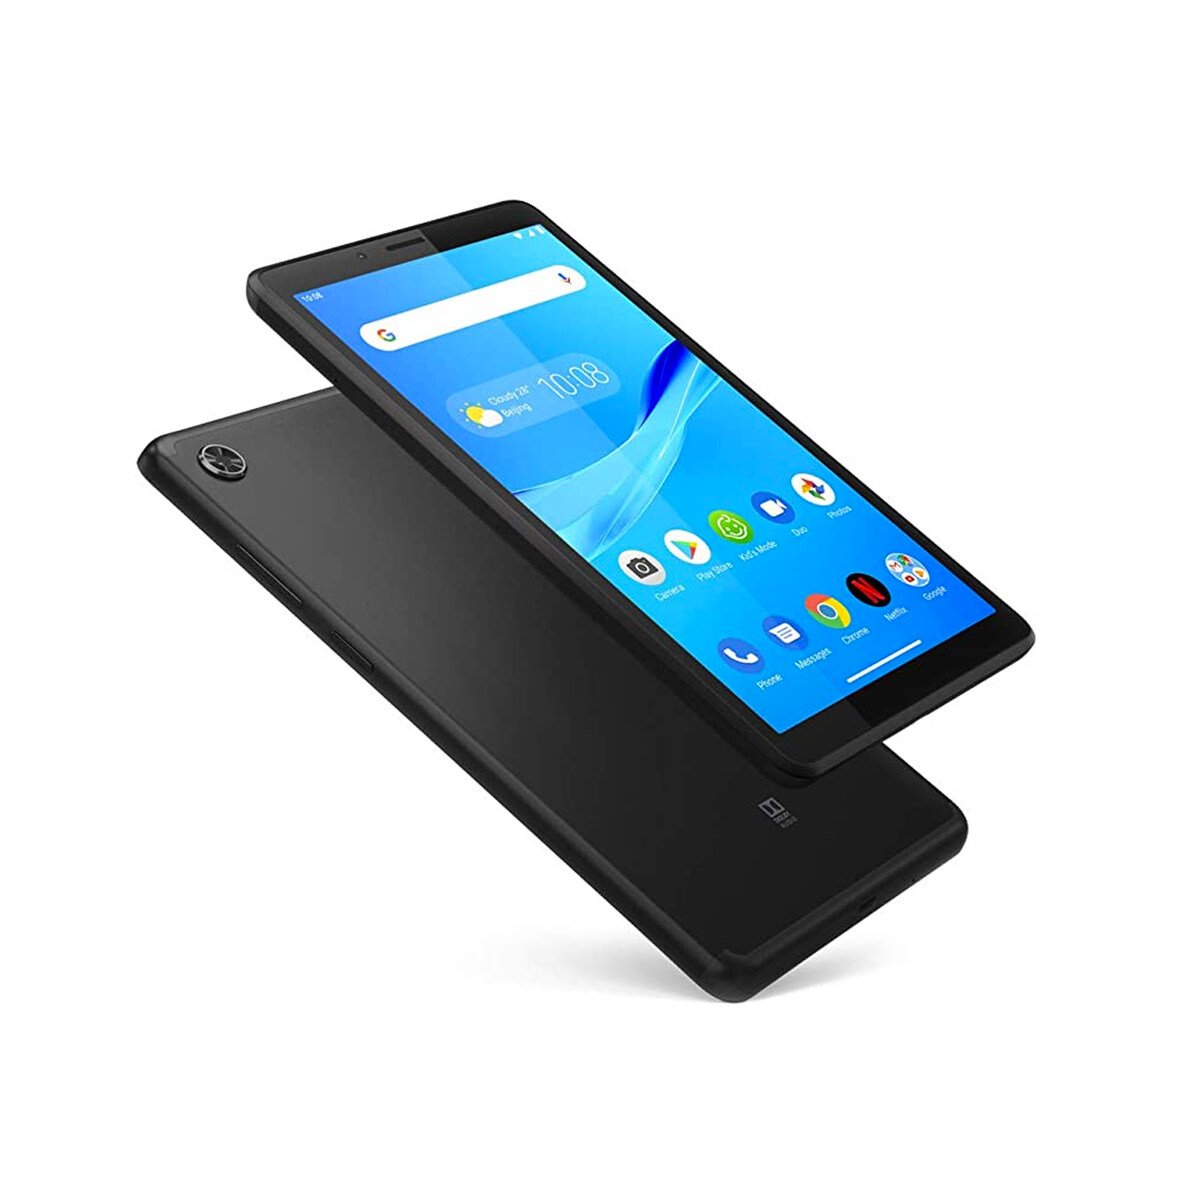 Lenovo Tablet M7 TB-7305I, Quad-Core, 1GB RAM, 16GB Memory, 7.0" Display, Android Pie, 3G, Onyx Black